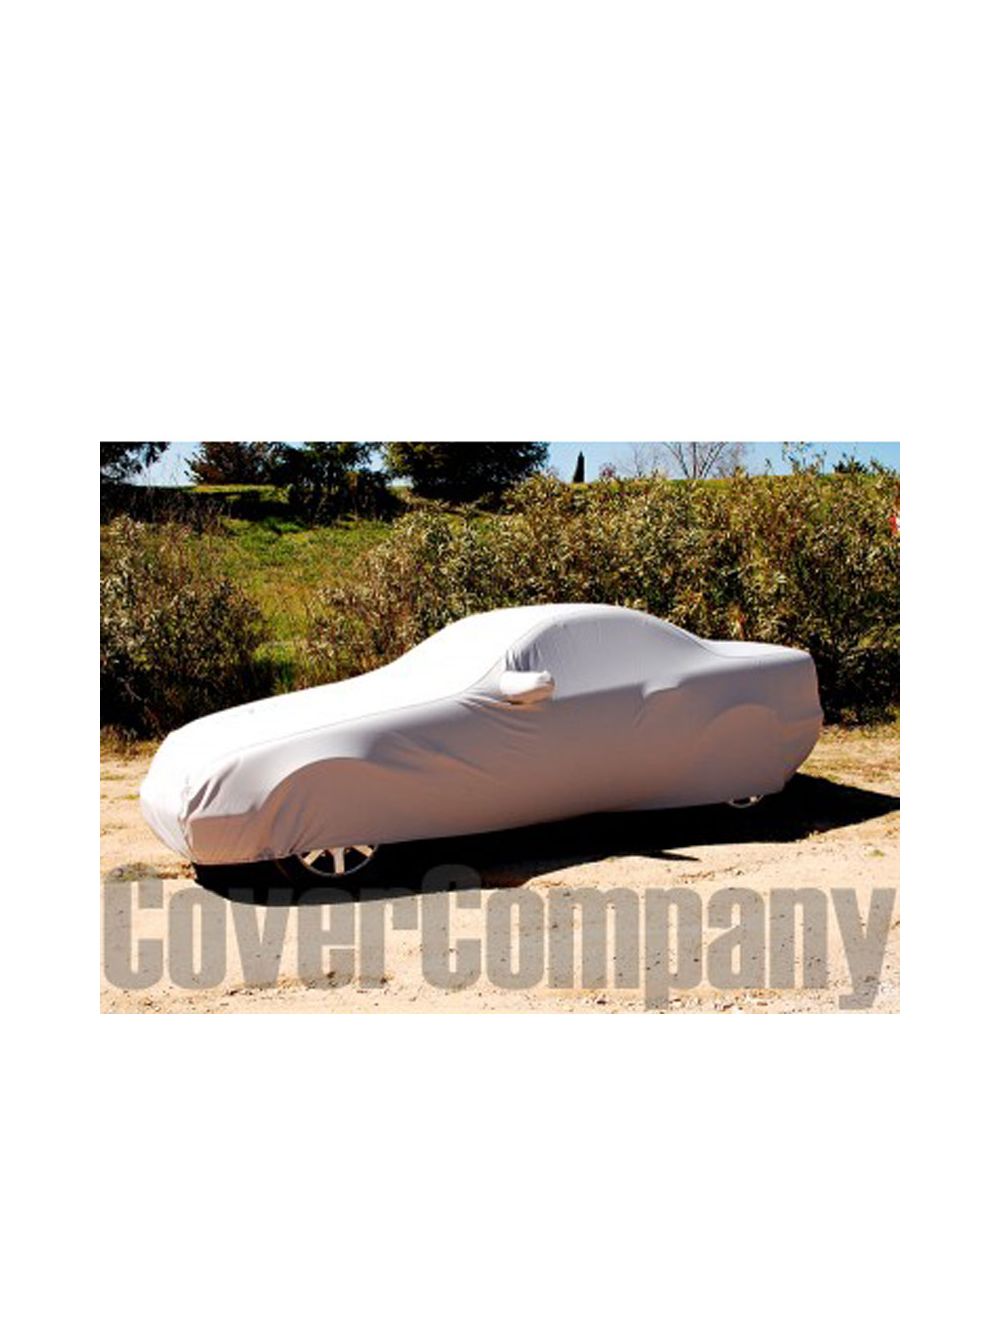 Mercedes Rainproof Car Cover - Outdoor Bronze Range